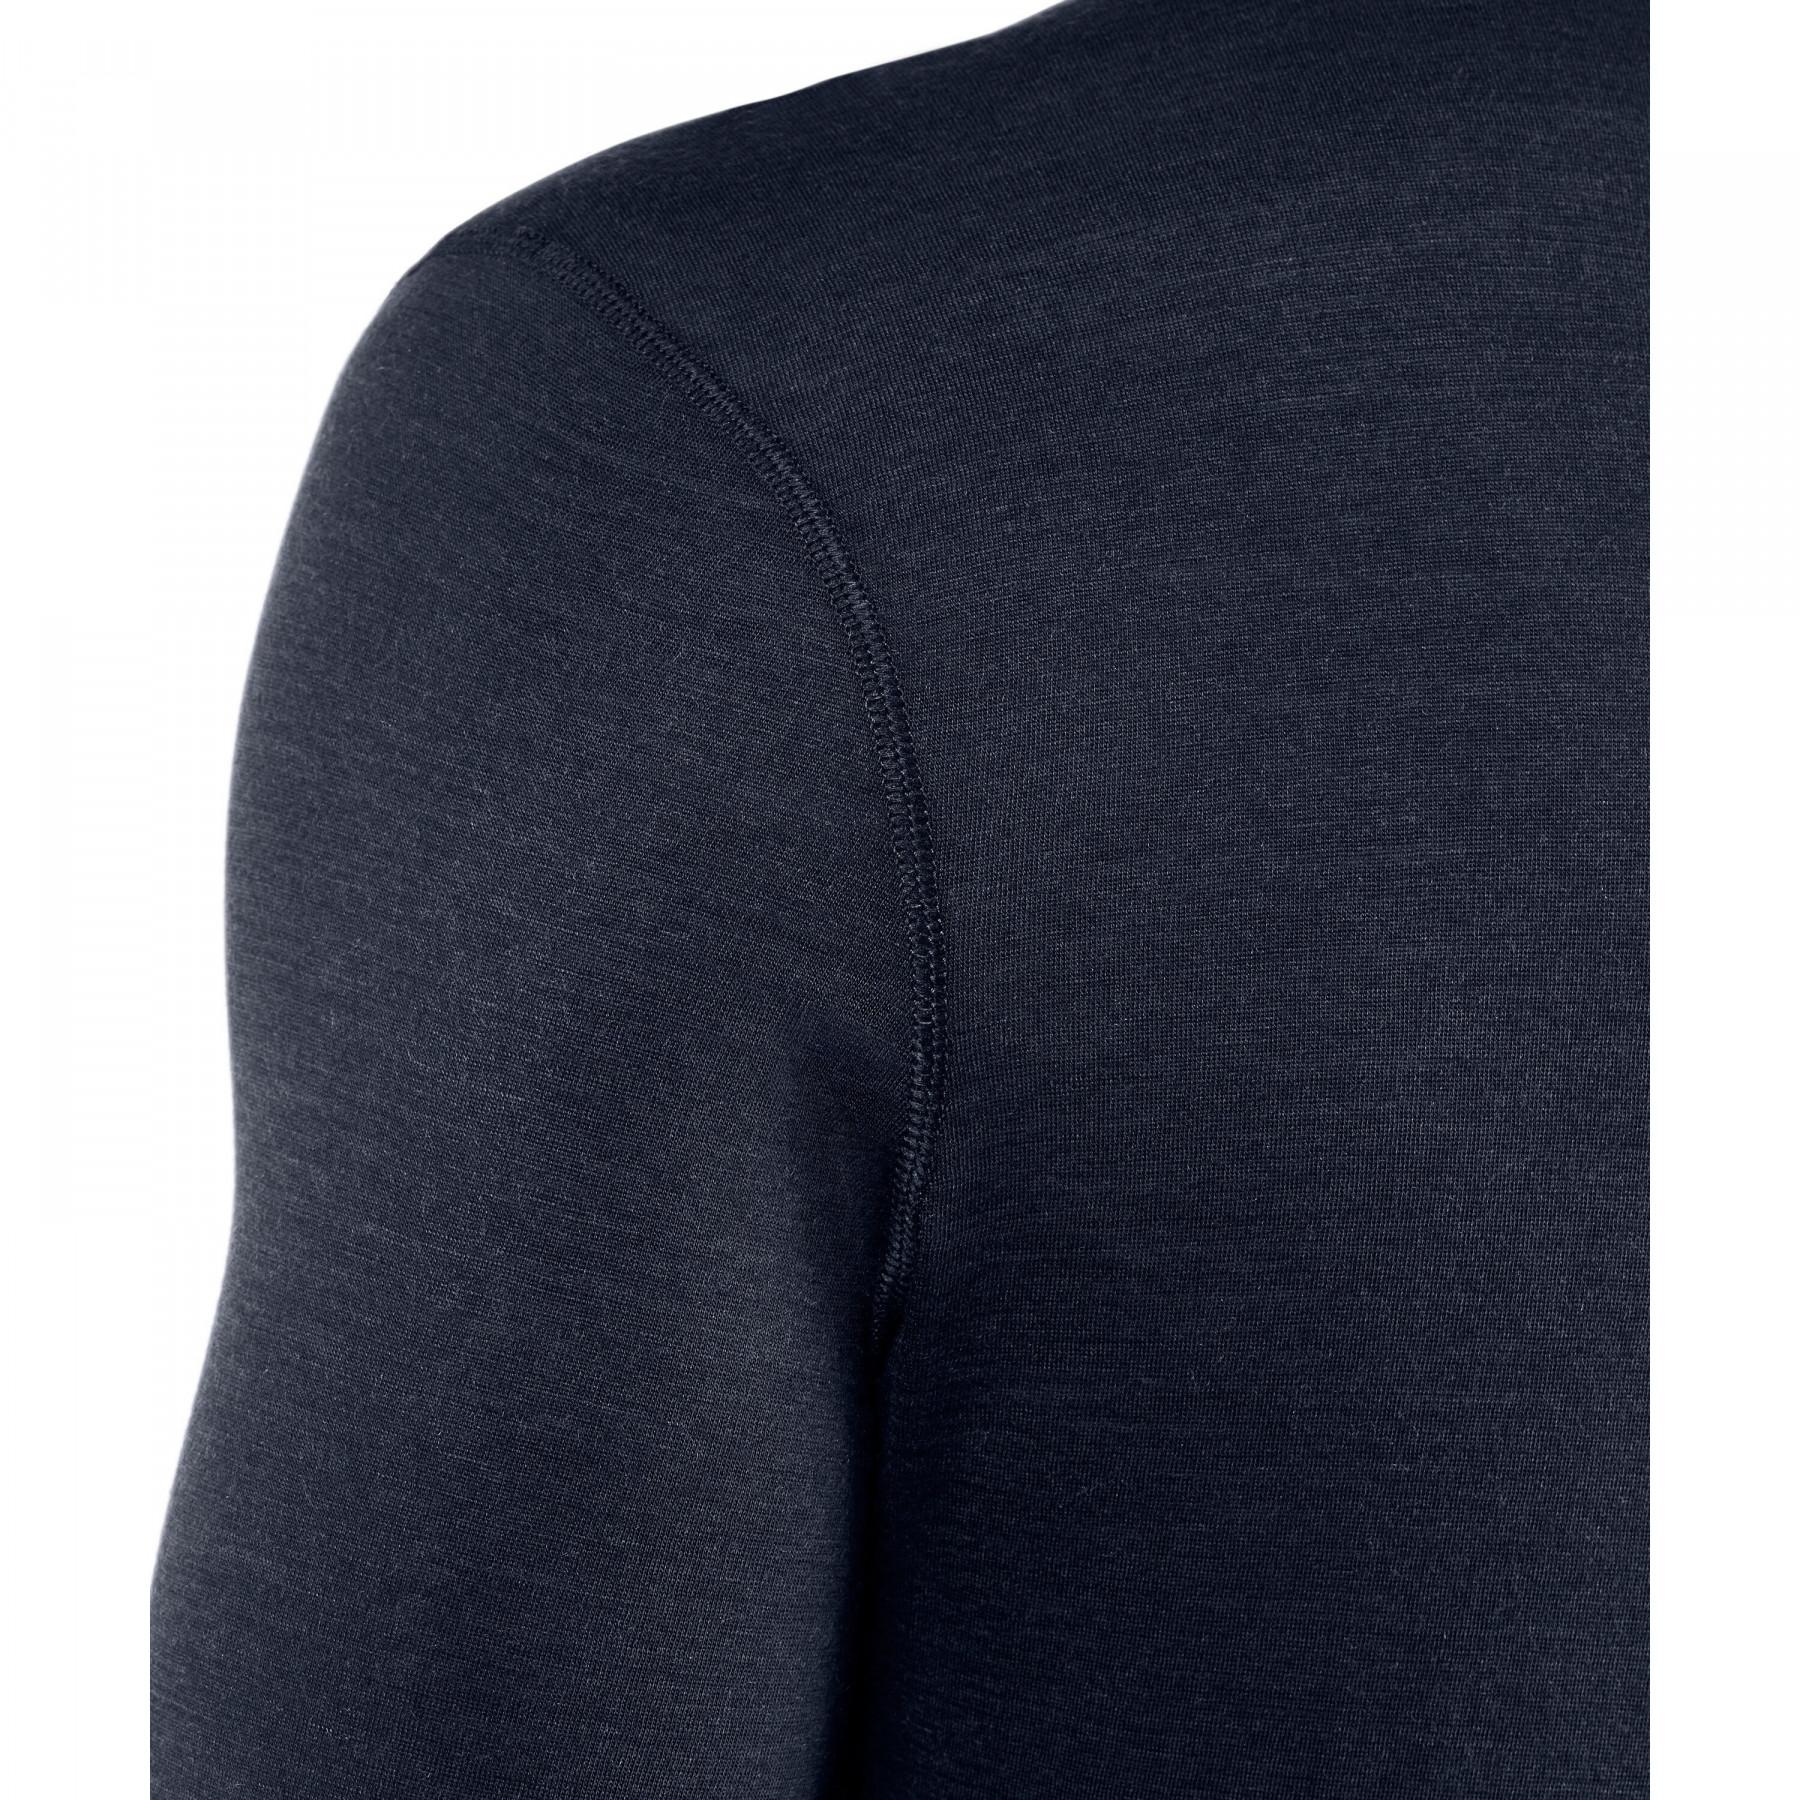 Långärmad T-shirt Falke Silk-Wool